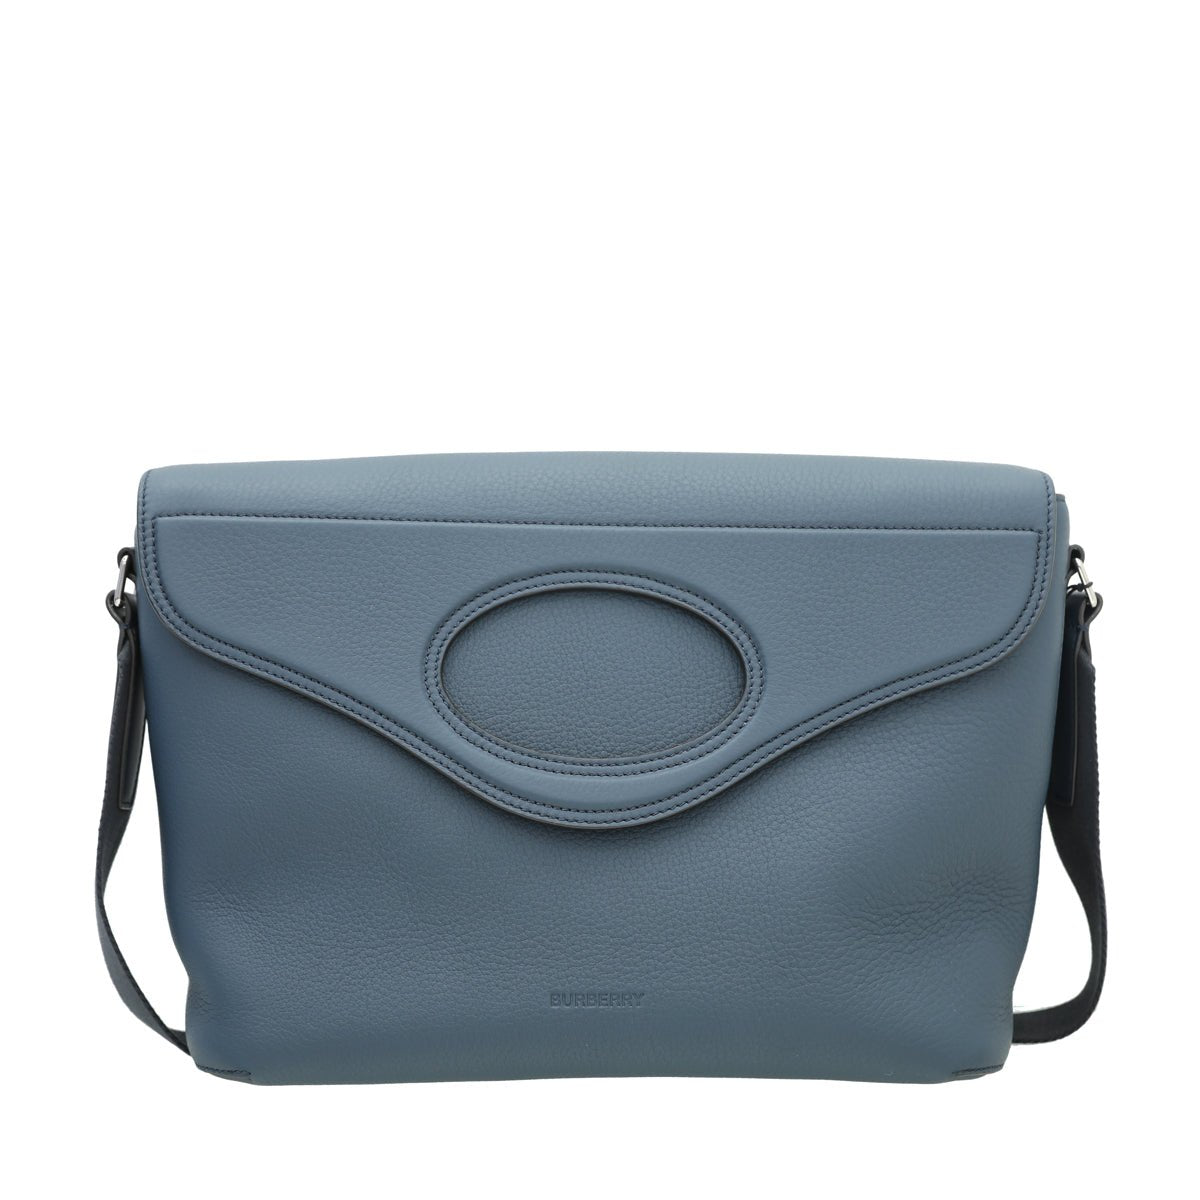 Burberry - Burberry Ash Blue Pocket Large Messenger Bag | The Closet